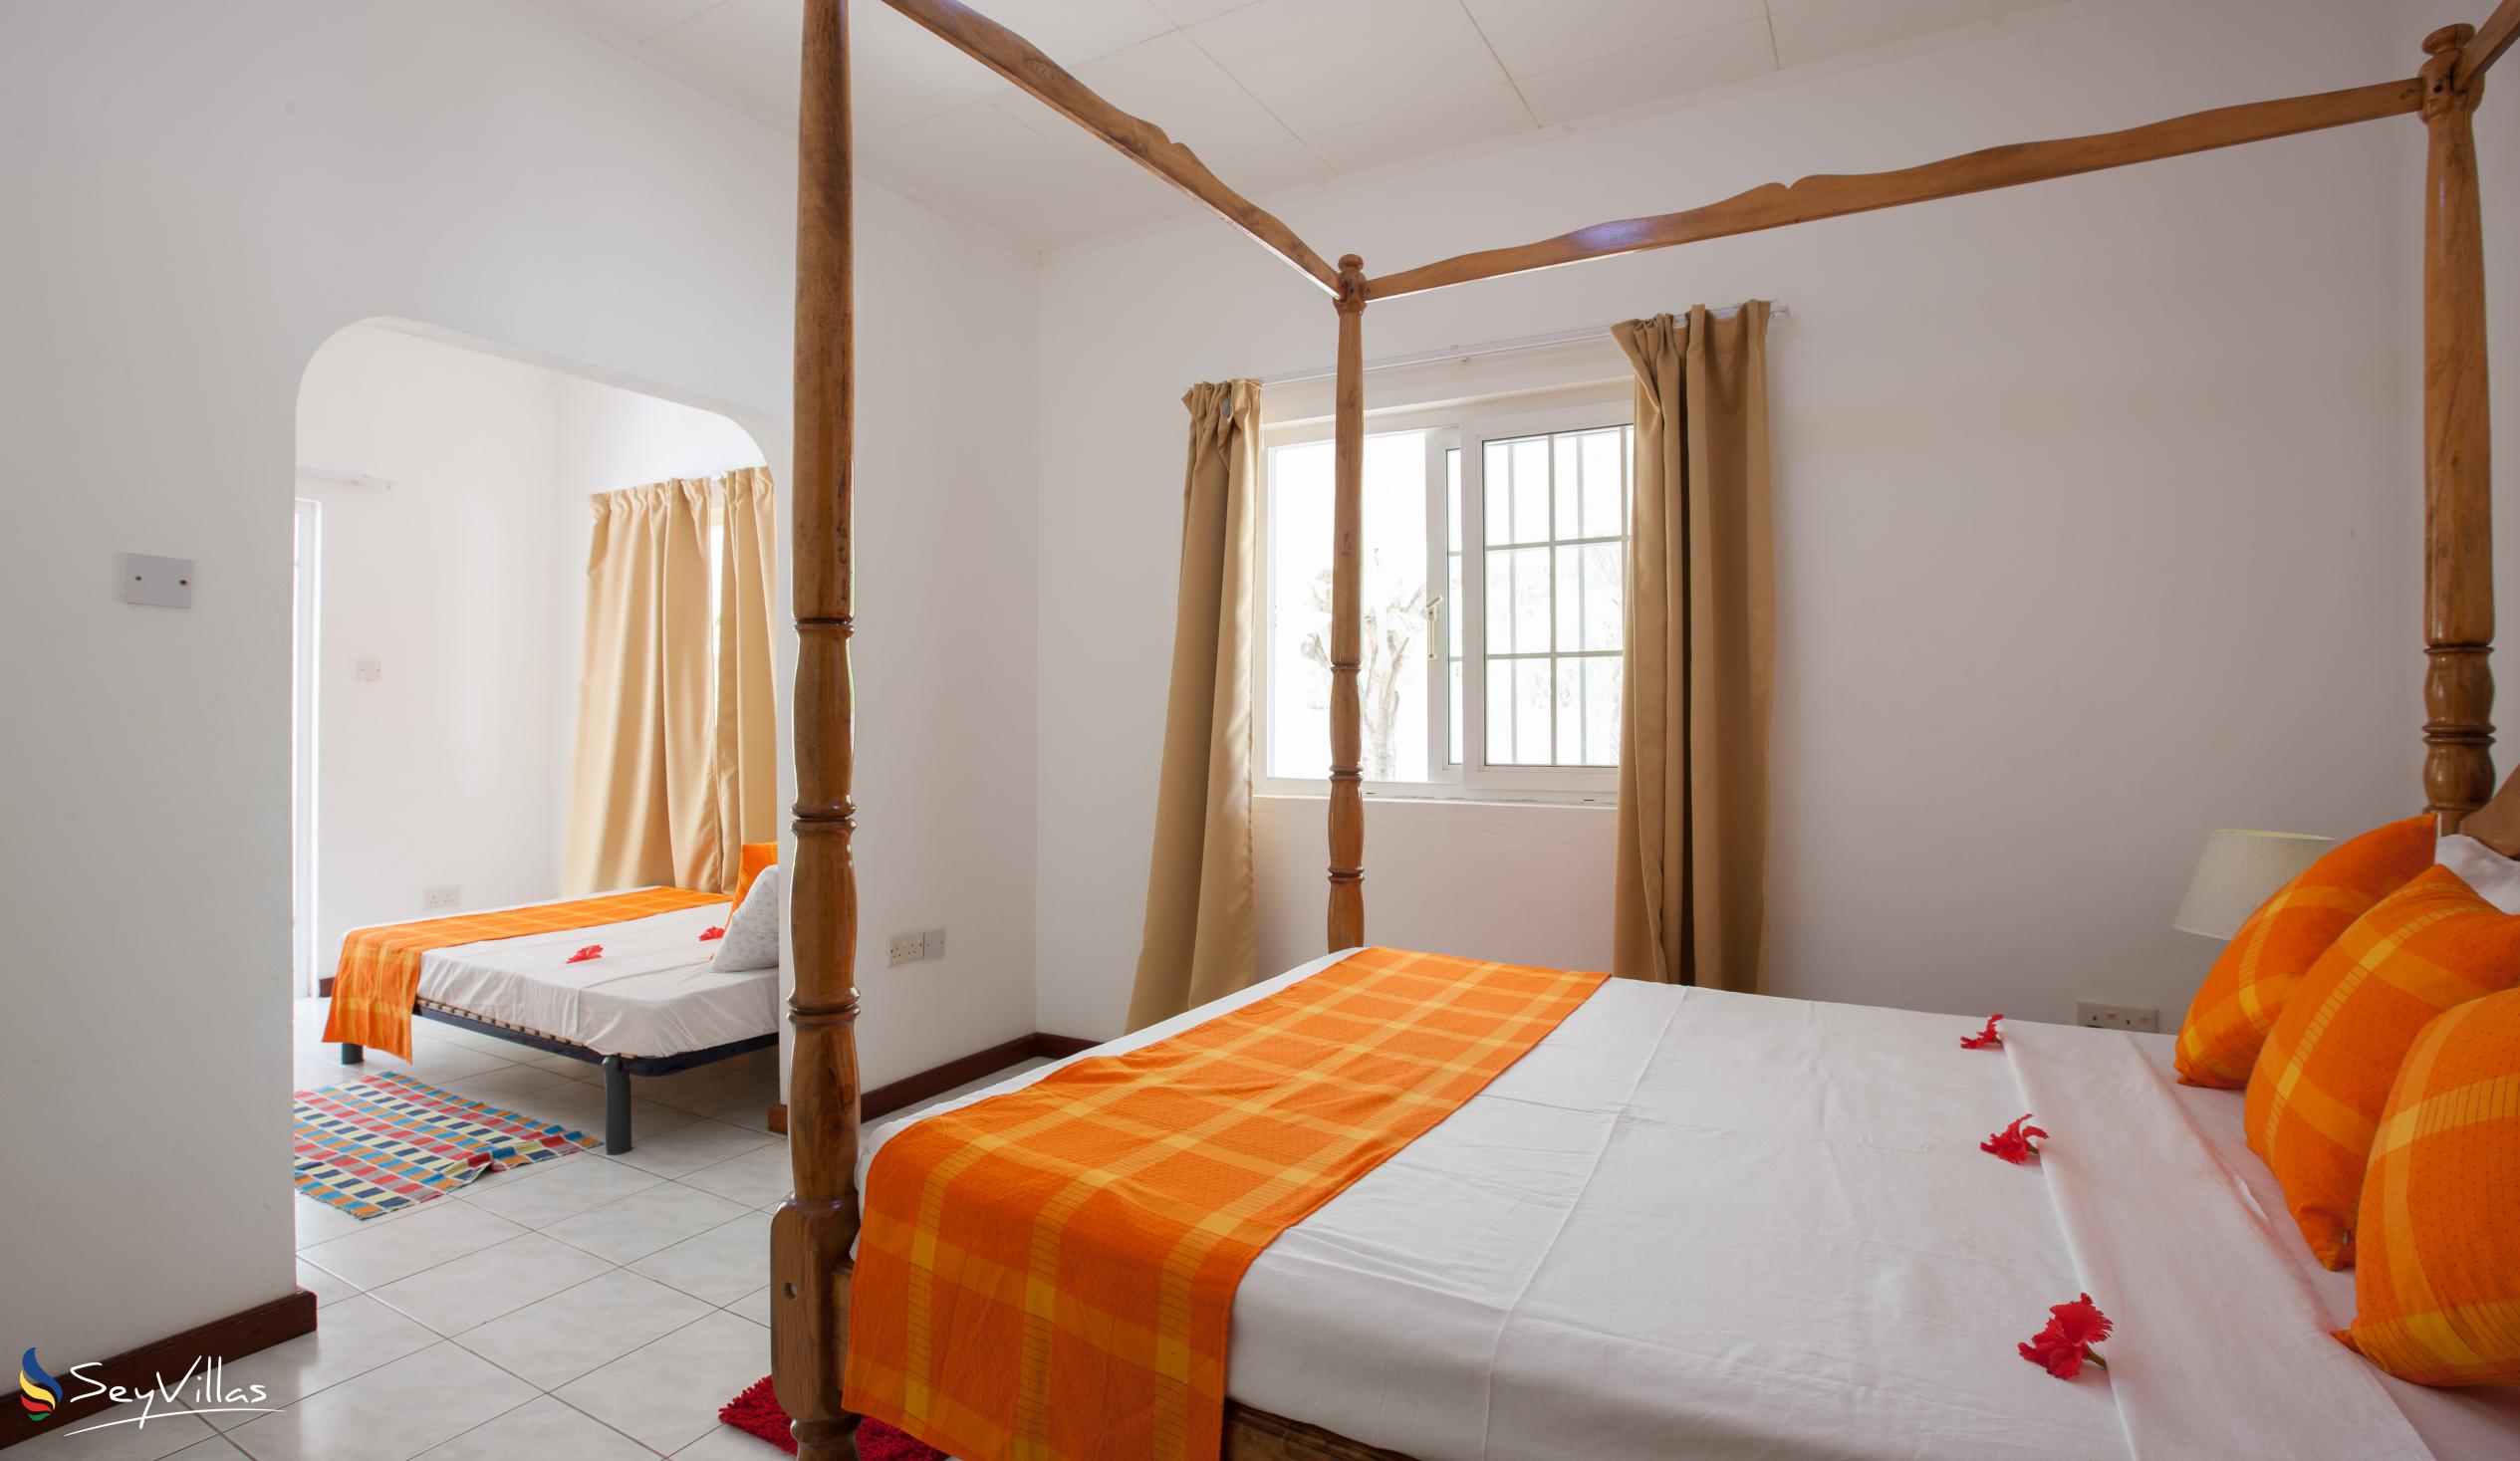 Foto 42: Villa Confort - Chambre familiale 1 - Praslin (Seychelles)